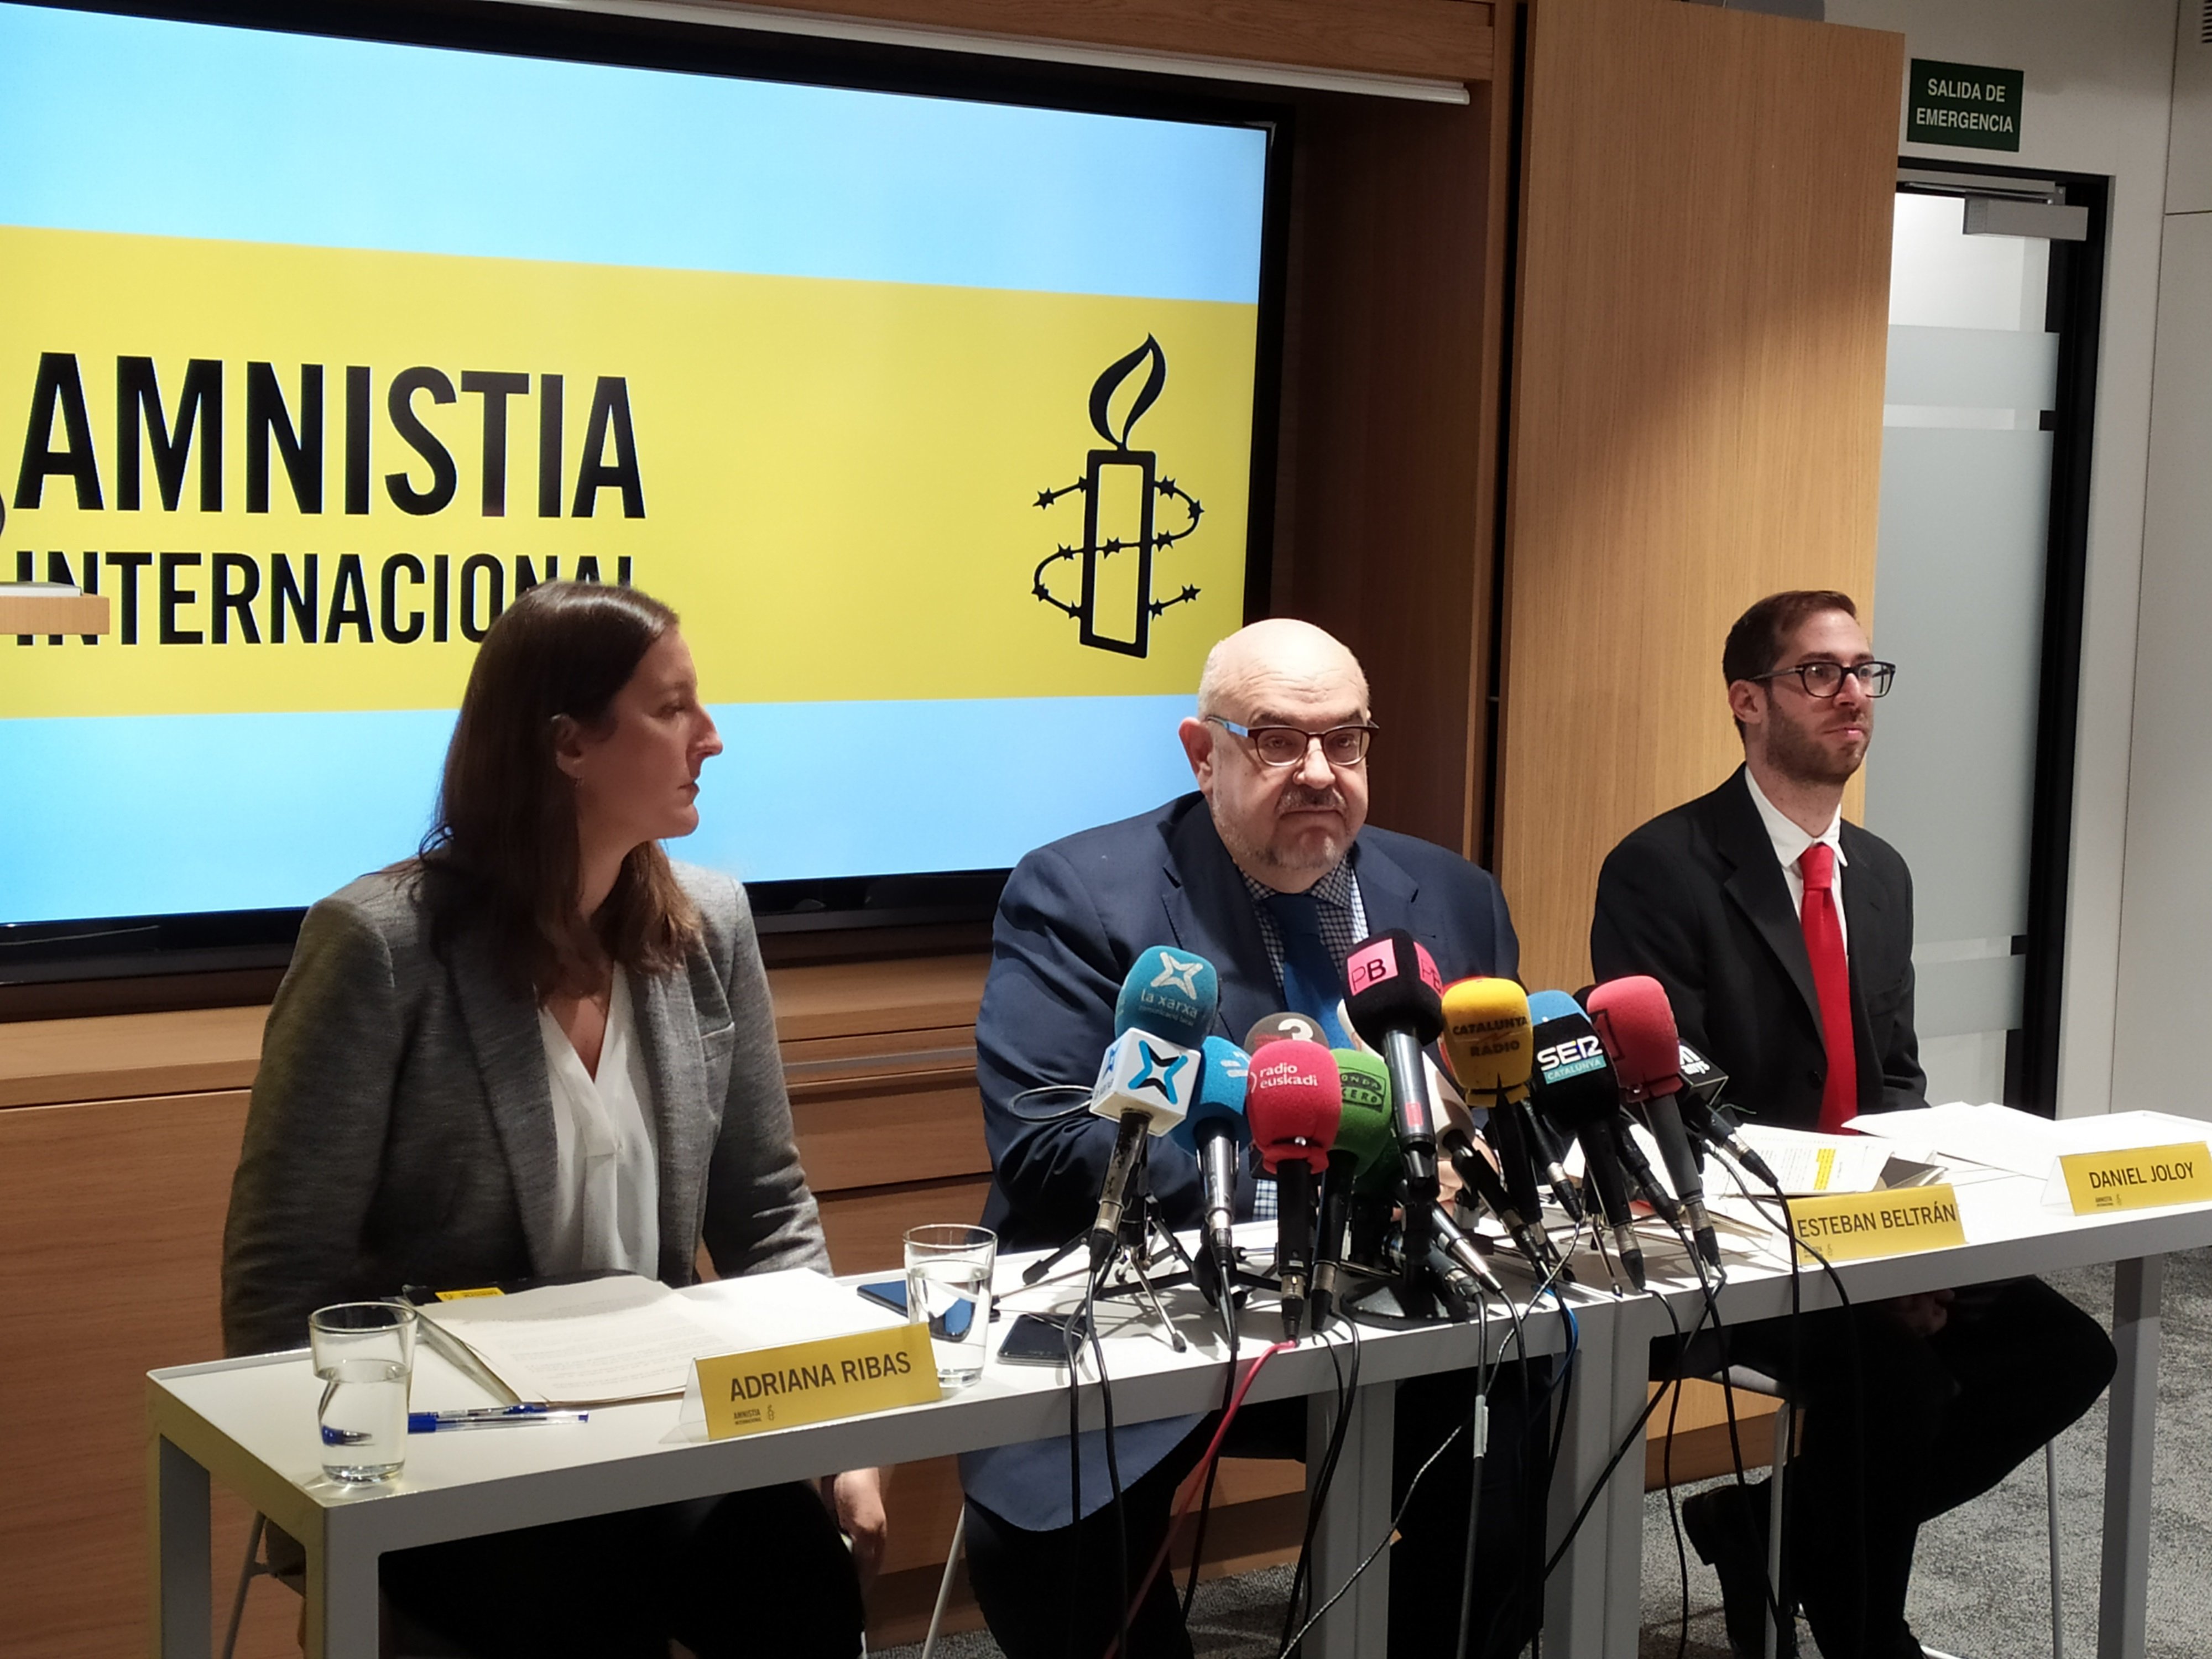 Amnistia Internacional reclama canvis a Espanya arran de la sentència de Valtònyc